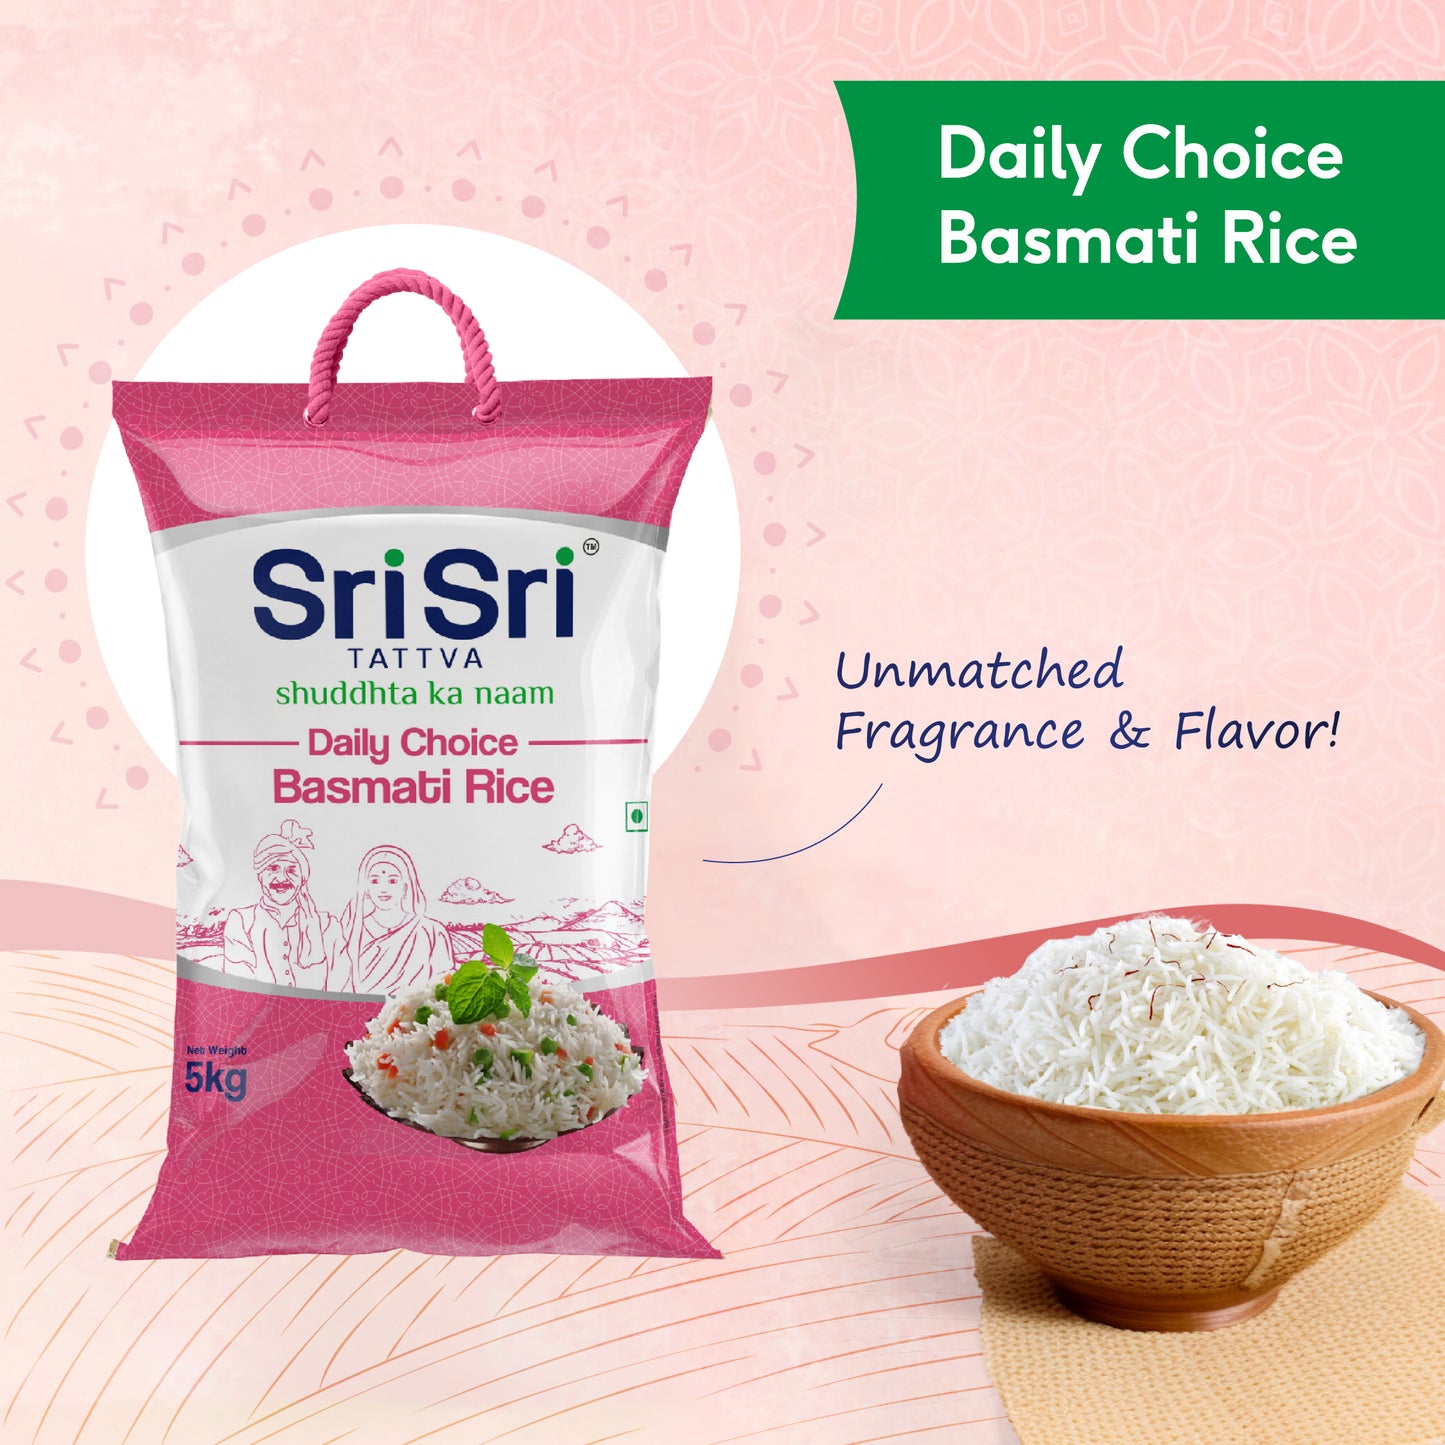 Daily Choice Basmati Rice, 5 kg